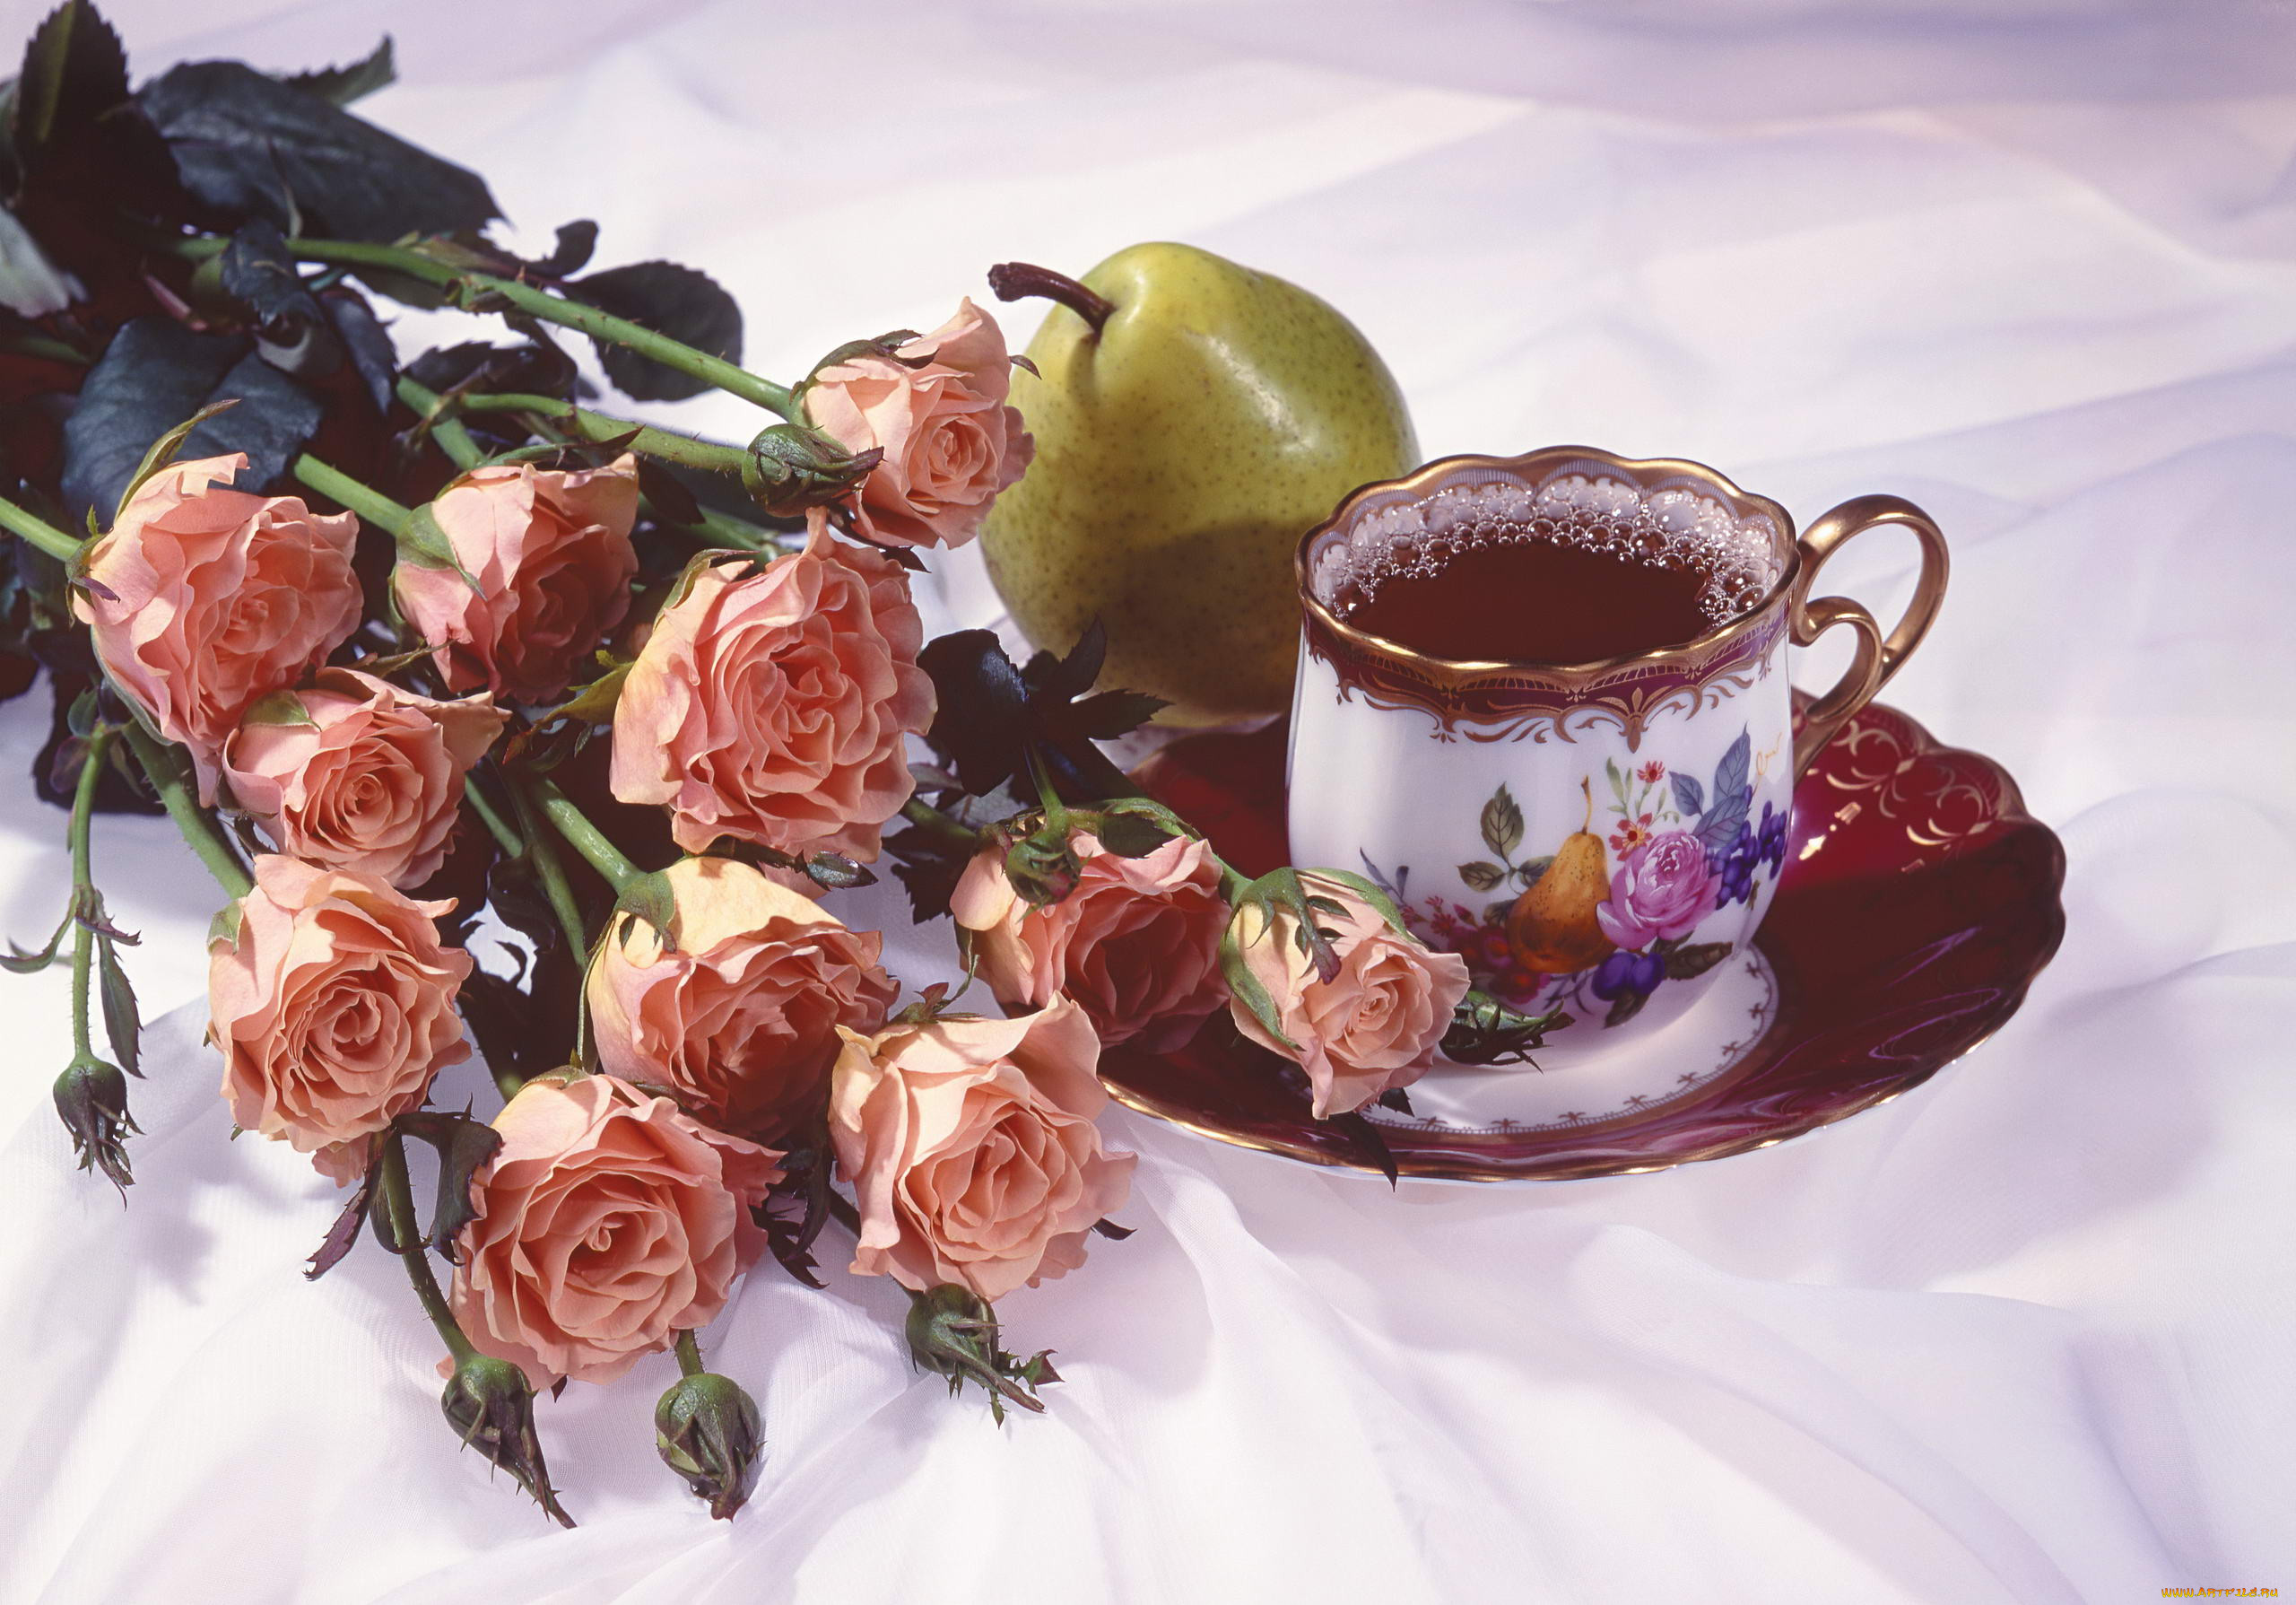 Утра доброго времени суток. Открытки доброе утро. Прекрасного утра и настроения. Открытки с добрым утром с розами. Открытки с добрым утром с цветами.